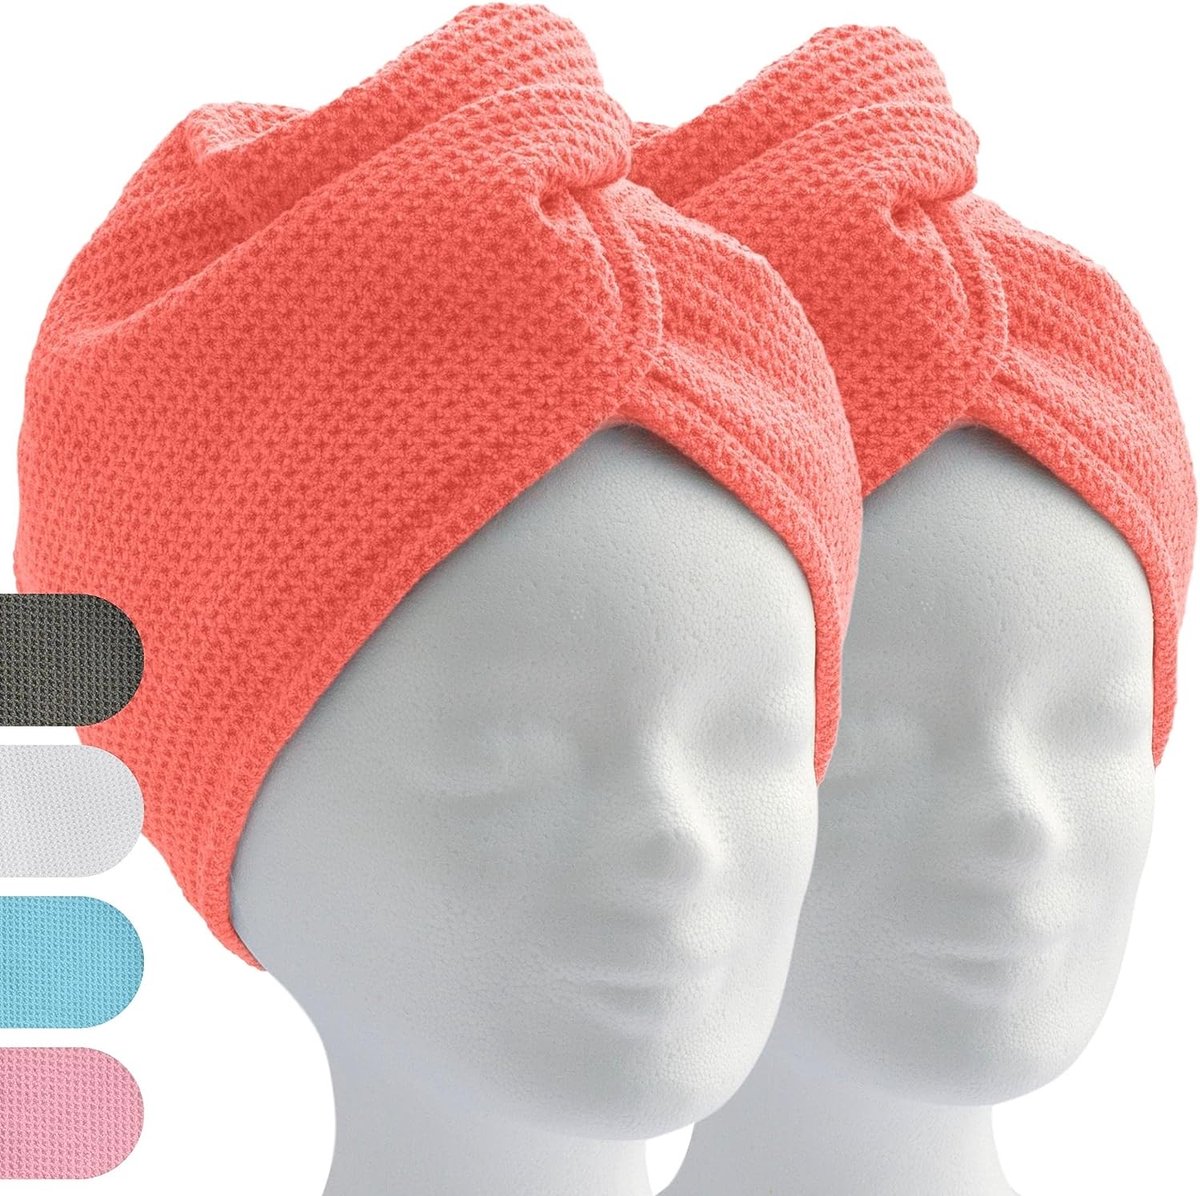 haartulband, tulband handdoek met knoop (2 stuks, koraalrood/oranje), microvezel handdoek voor hoofd en lang haar